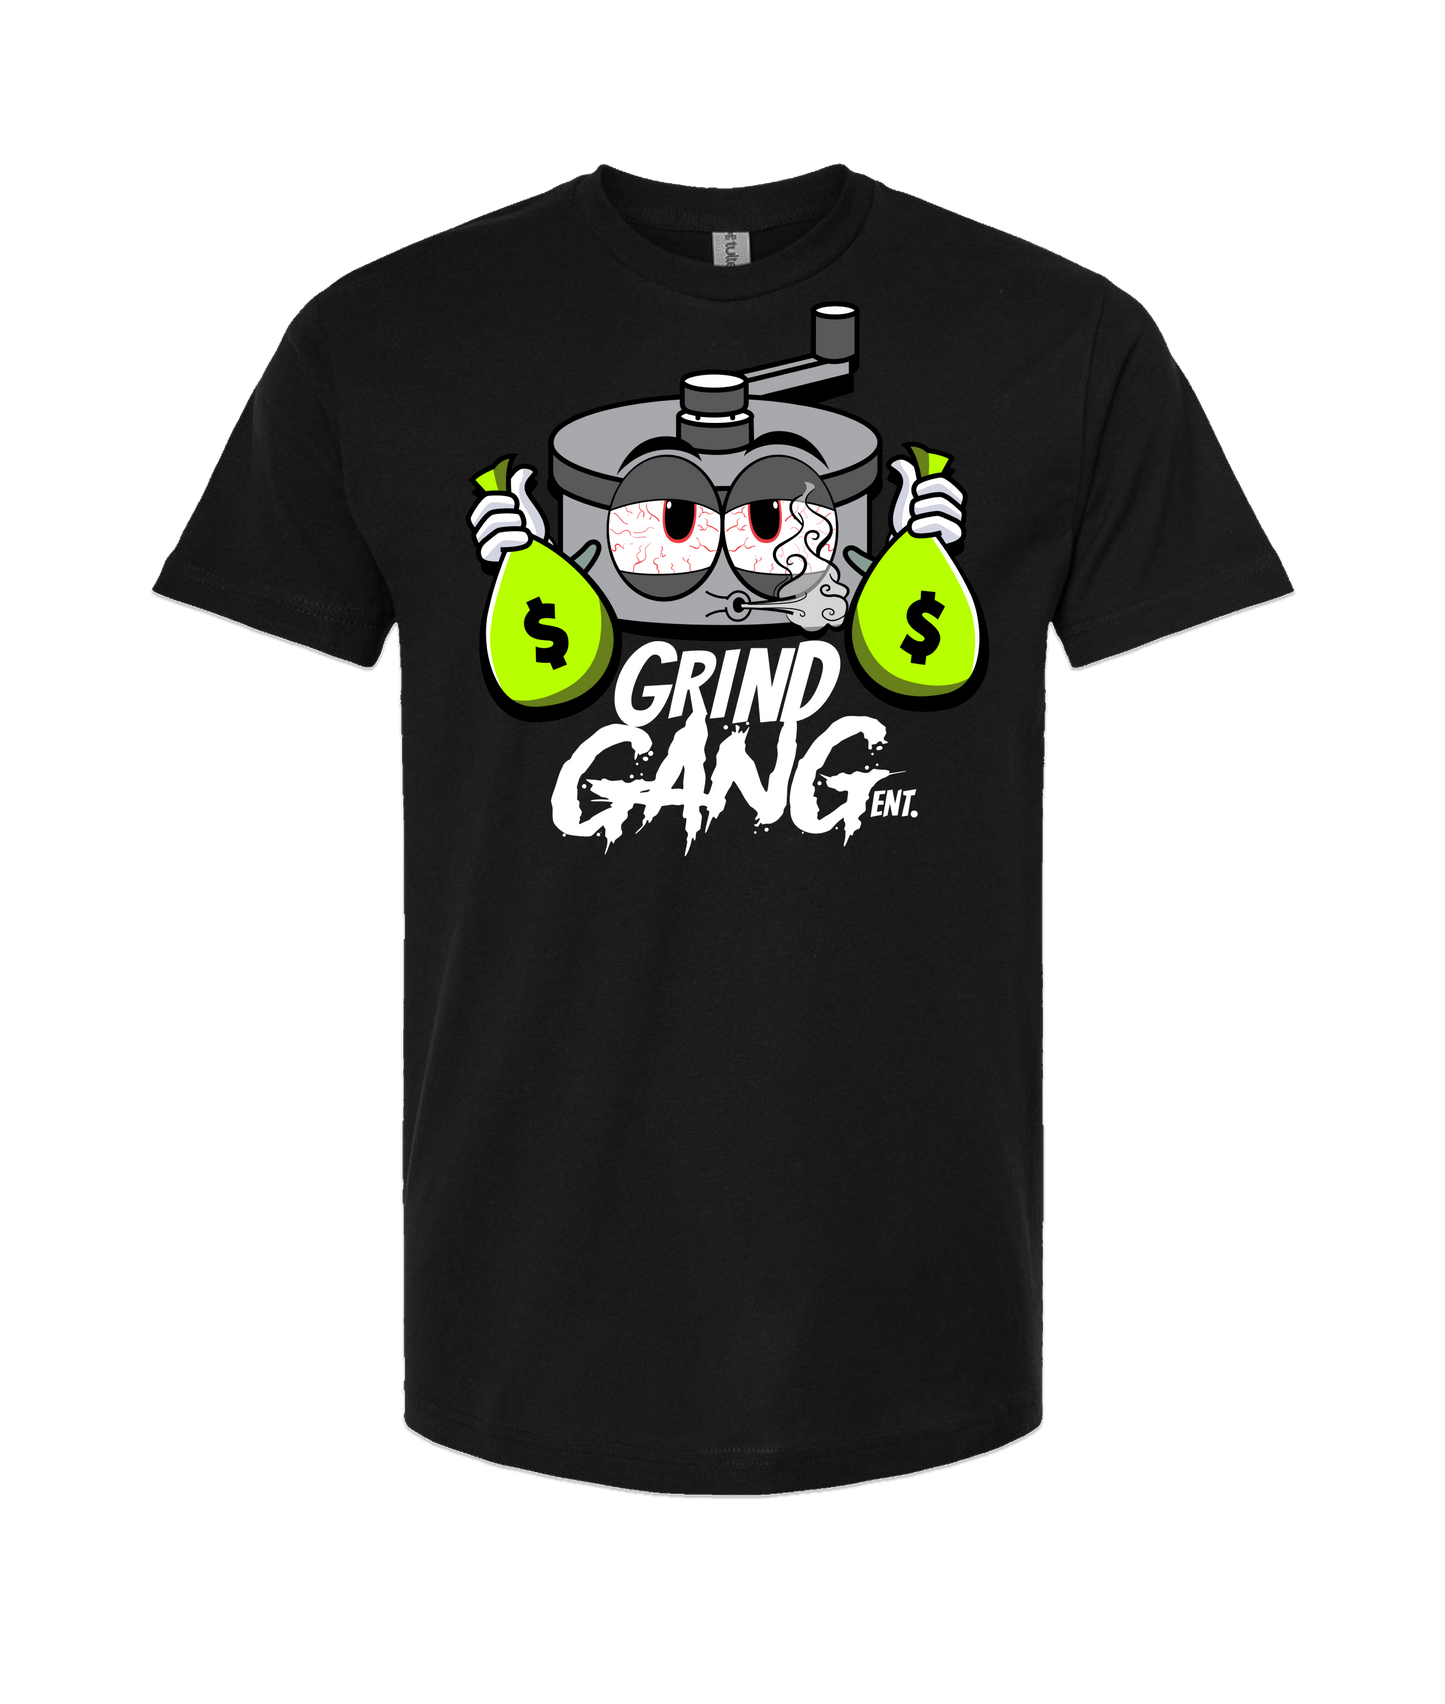 GRIND GANG ENT. LLC - SILVER GRINDER - Black T-Shirt